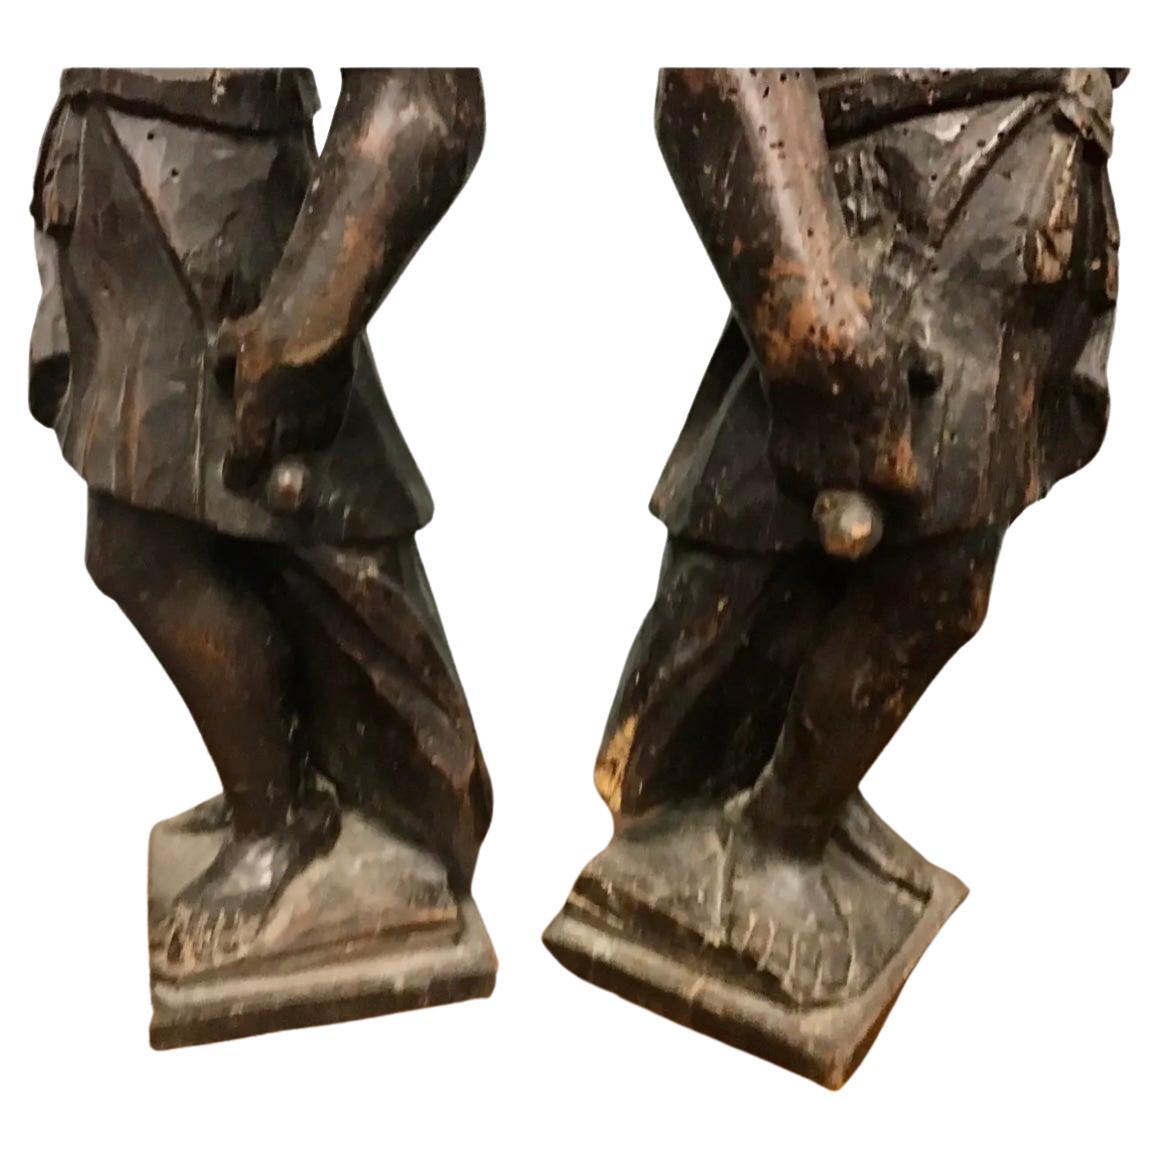 Schönes Paar antiker Schnitzfiguren. Italienisch, um 1780, die hohen Skulpturen stellen zwei Männer, wahrscheinlich Soldaten, in wallenden Gewändern mit ausgestrecktem Arm dar. 
Die eleganten Figuren sind in alters- und gebrauchsgerechtem Zustand